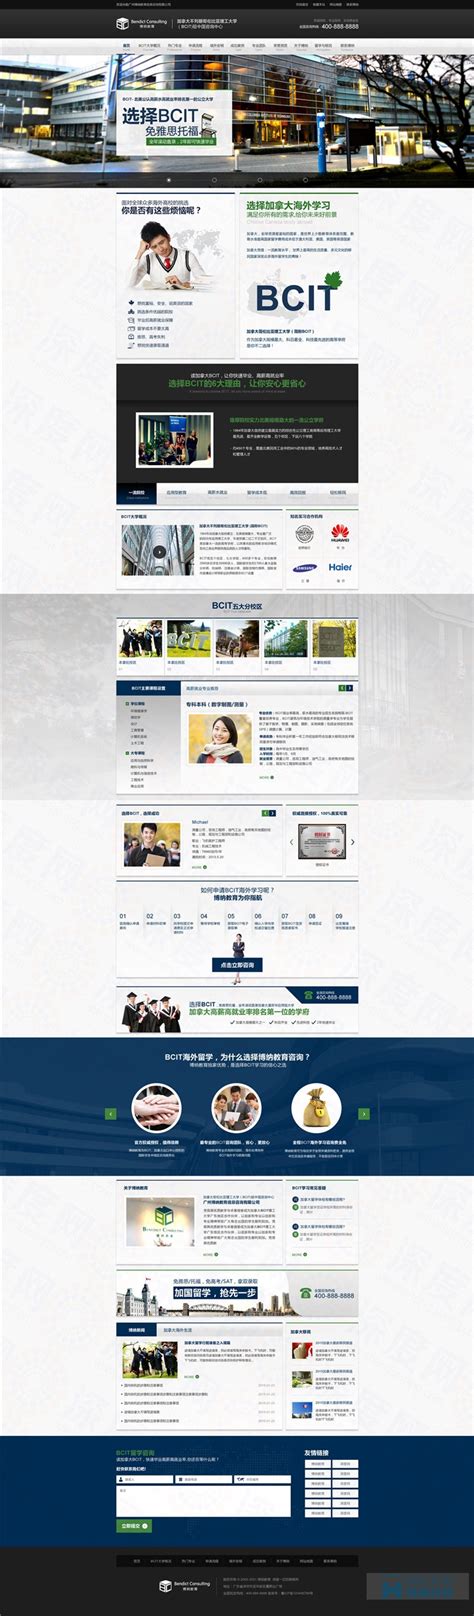 博纳教育网站设计,上海教育培训网站设计,上海网站建设教育培训-海淘科技